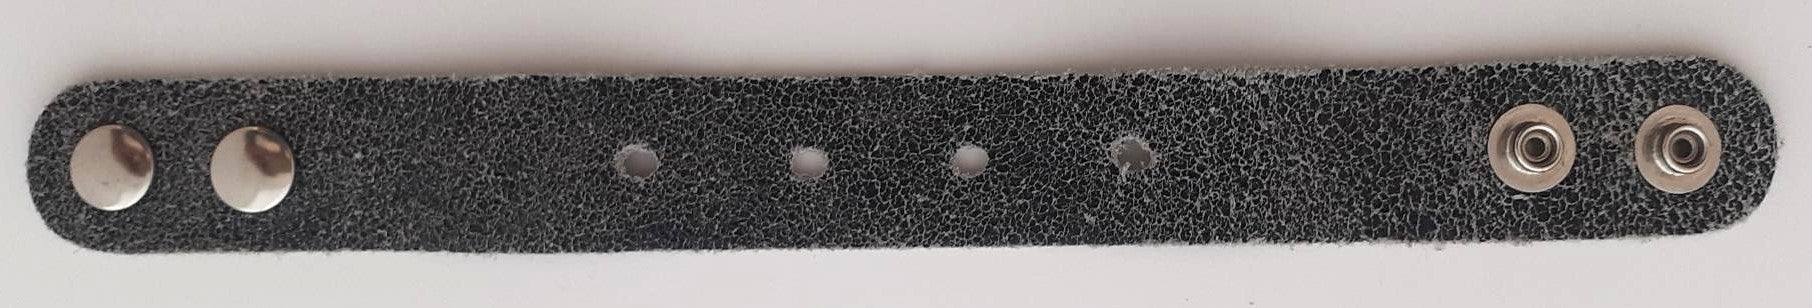 Armband 25 mm mit Druckknopfverschluss – 2725